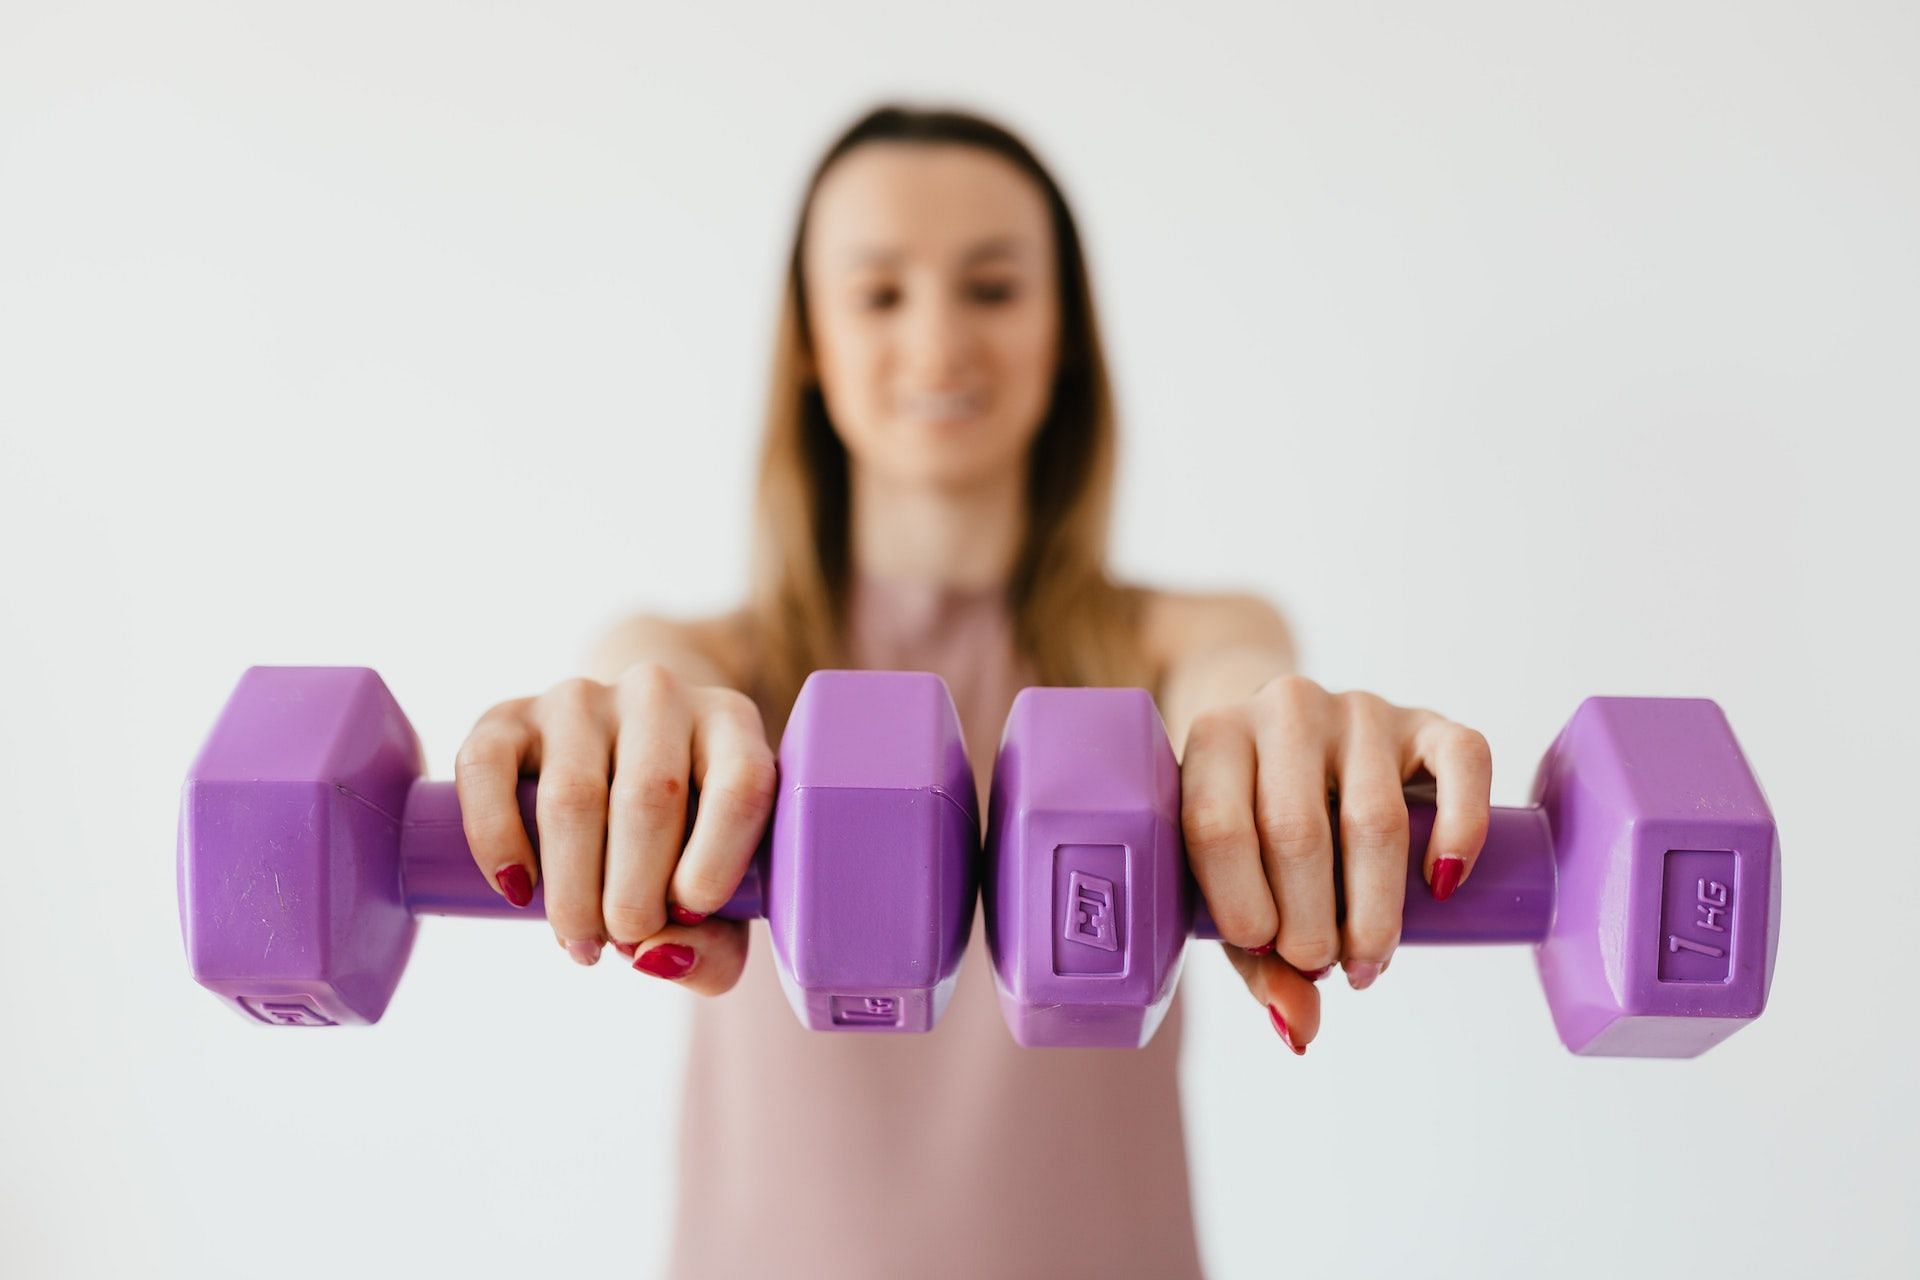 Dumbbell exercises help strengthen the upper body. (Photo via Pexels/Karolina Grabowska)